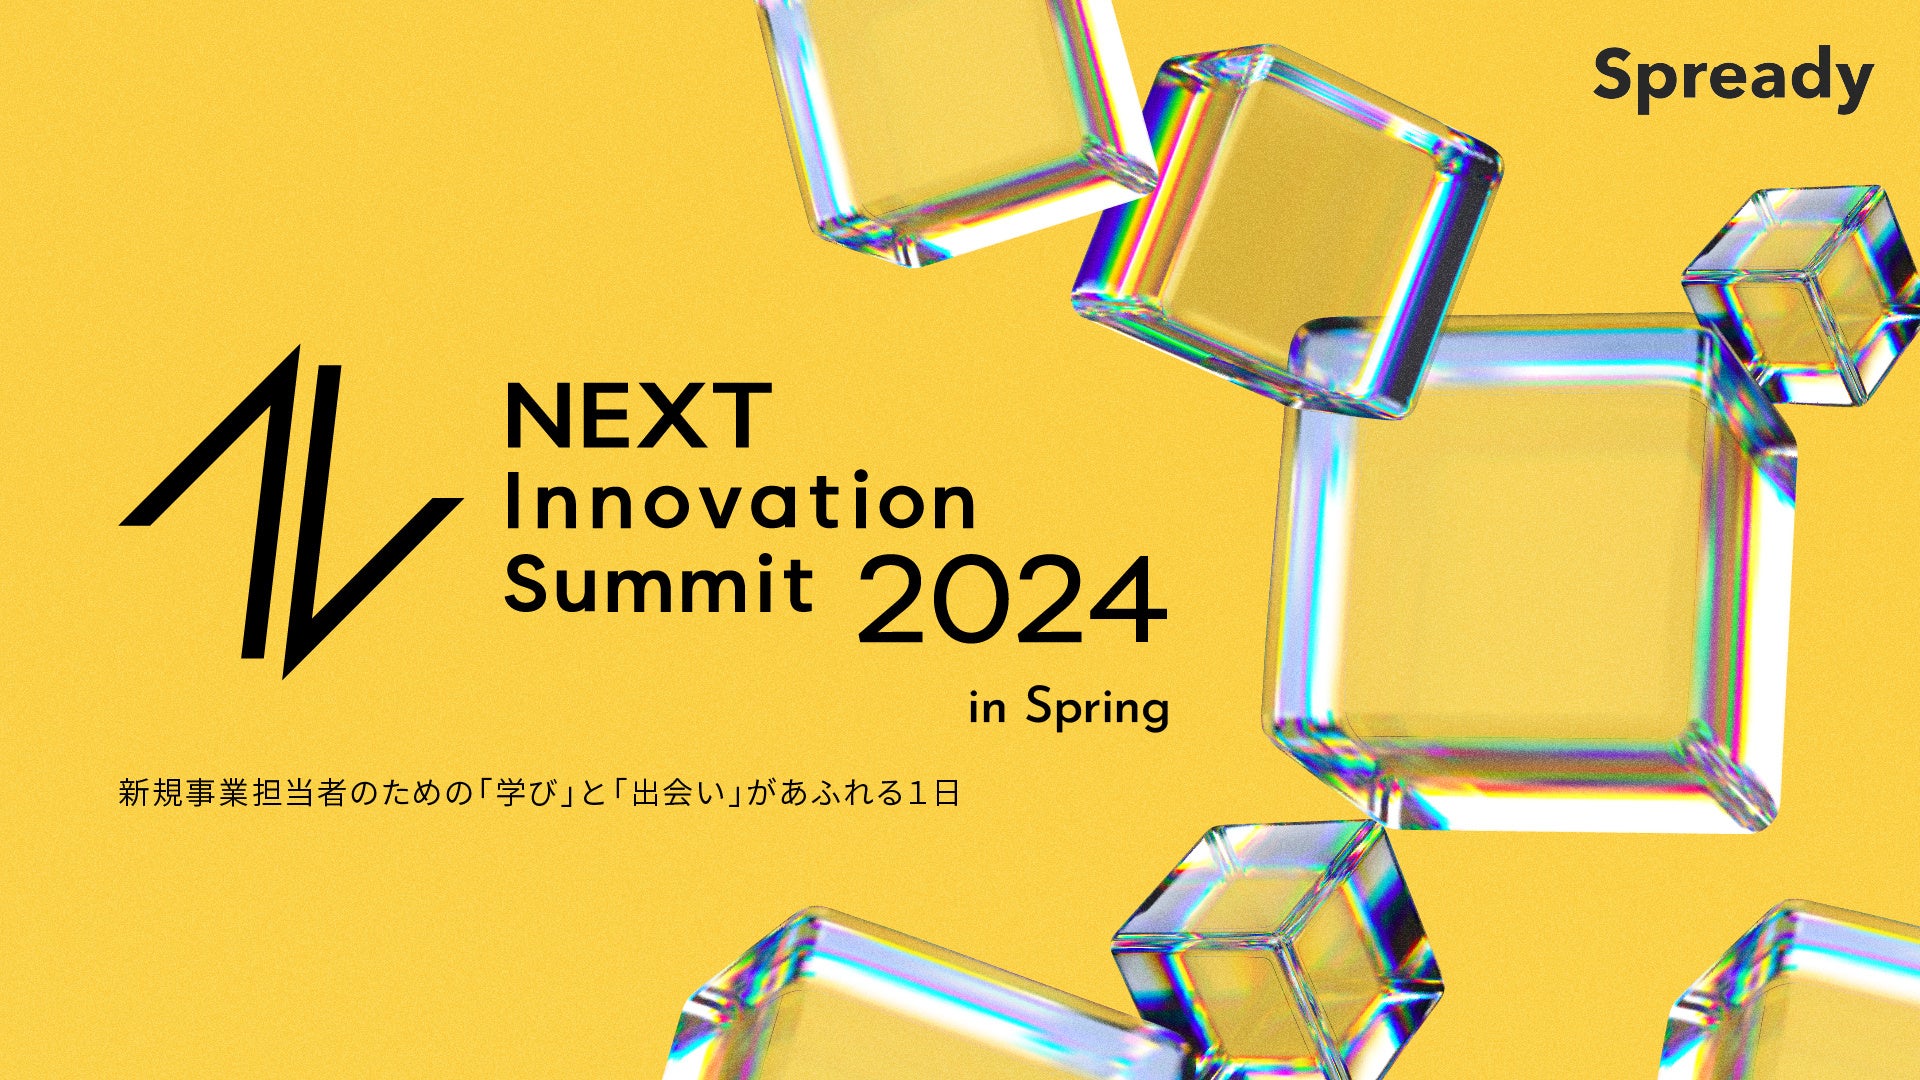 y524()JÁzxeNXEp[gi[YAVKƒS҂̂߂̃CxgwNEXT Innovation Summit 2024 in Springxɋ^